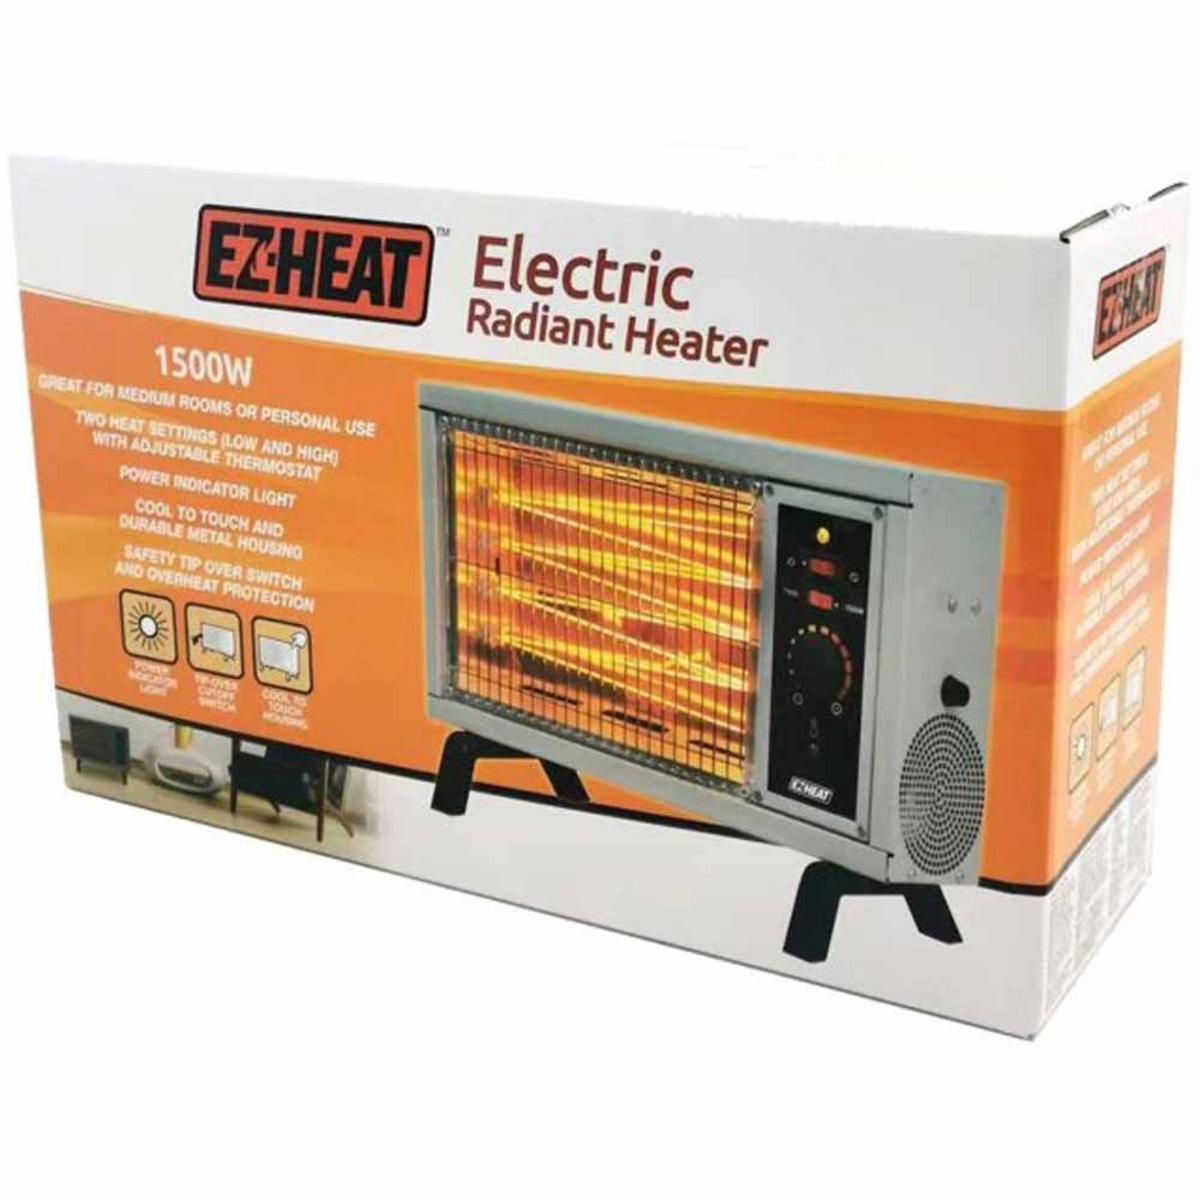 EZ Heat Electric Radiant Heater